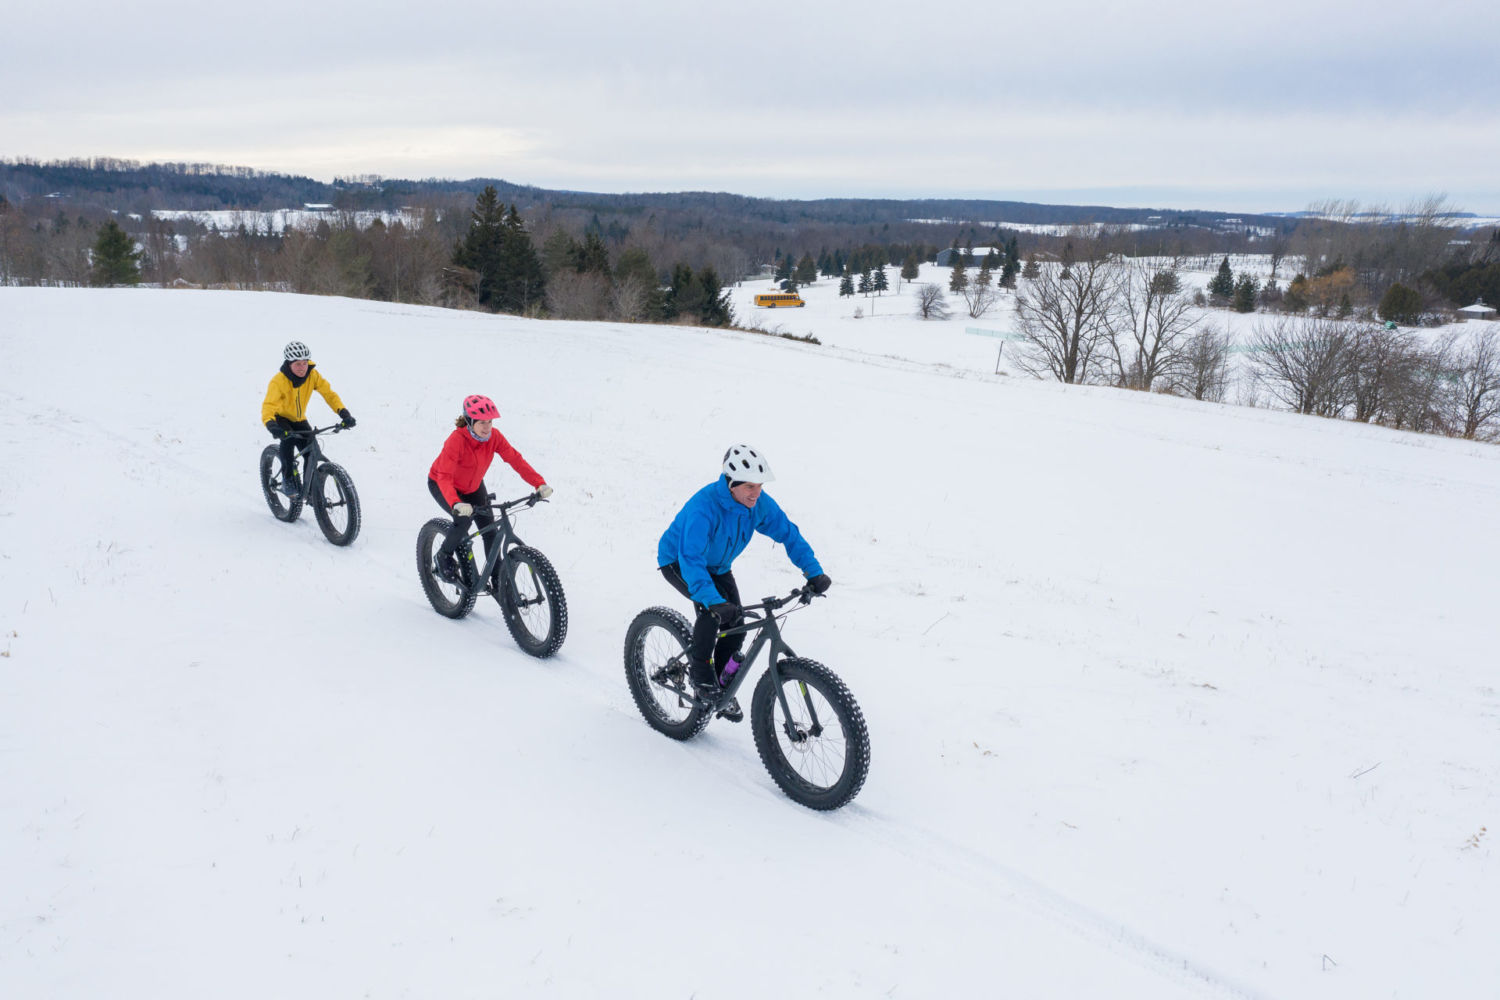 Tři cyklisté jedoucí zimní krajinou na speciálních kolech fatbike - Jizerské hory